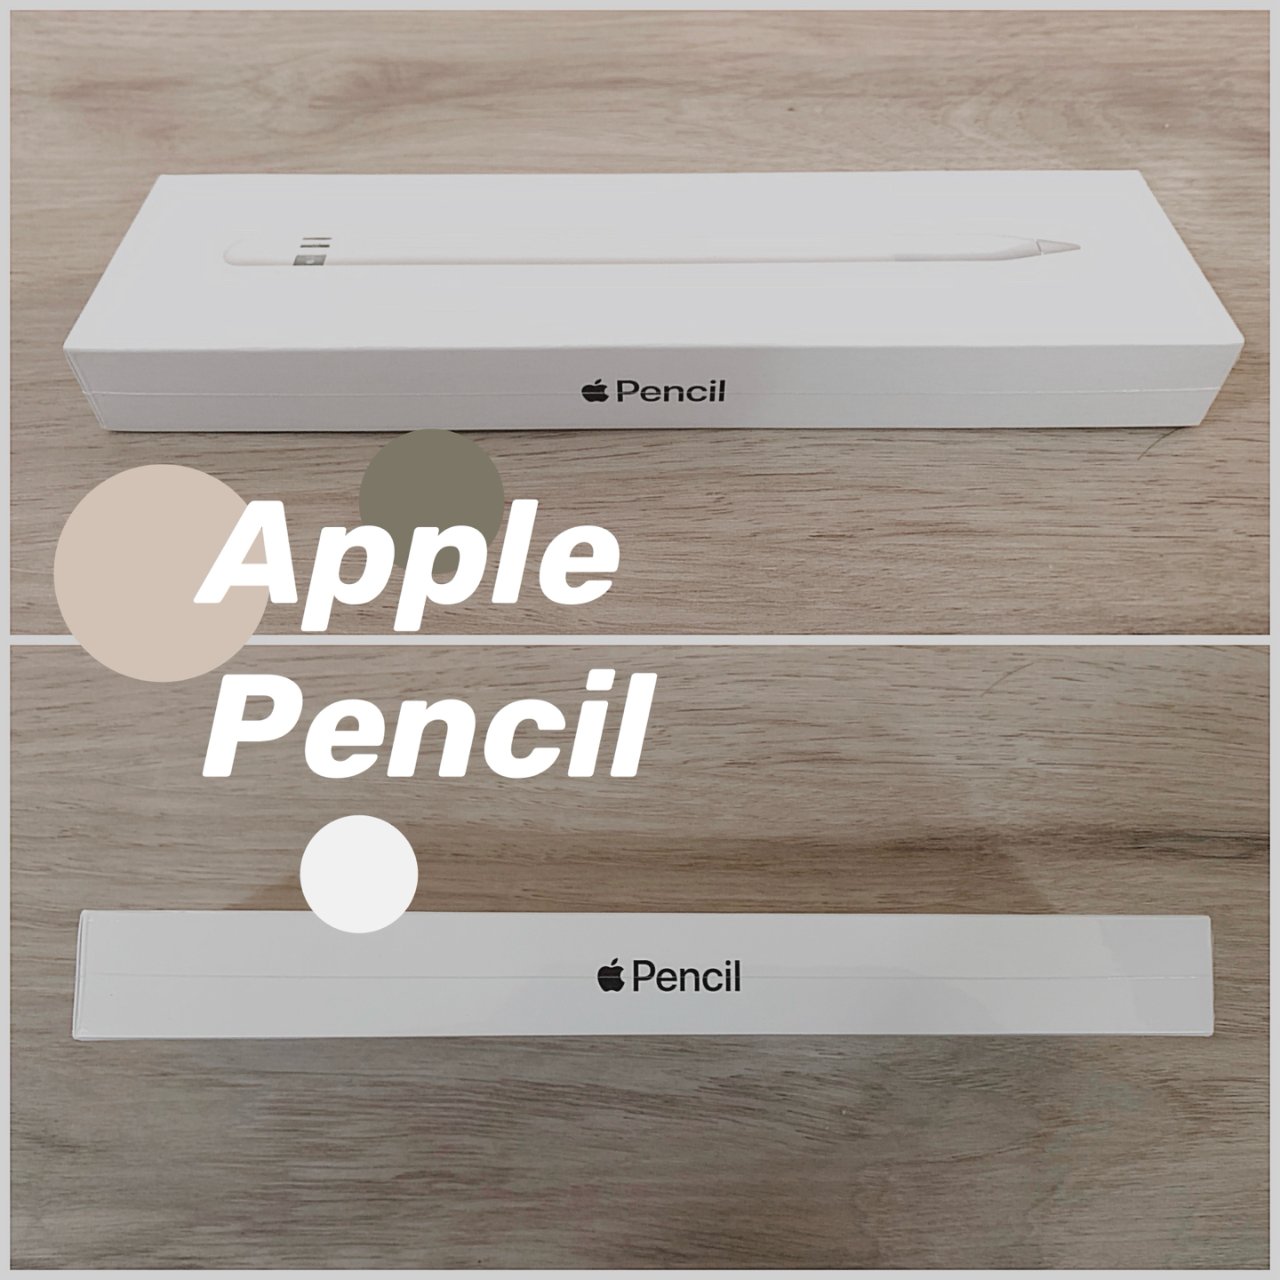 众测录取通知书,Apple pencil